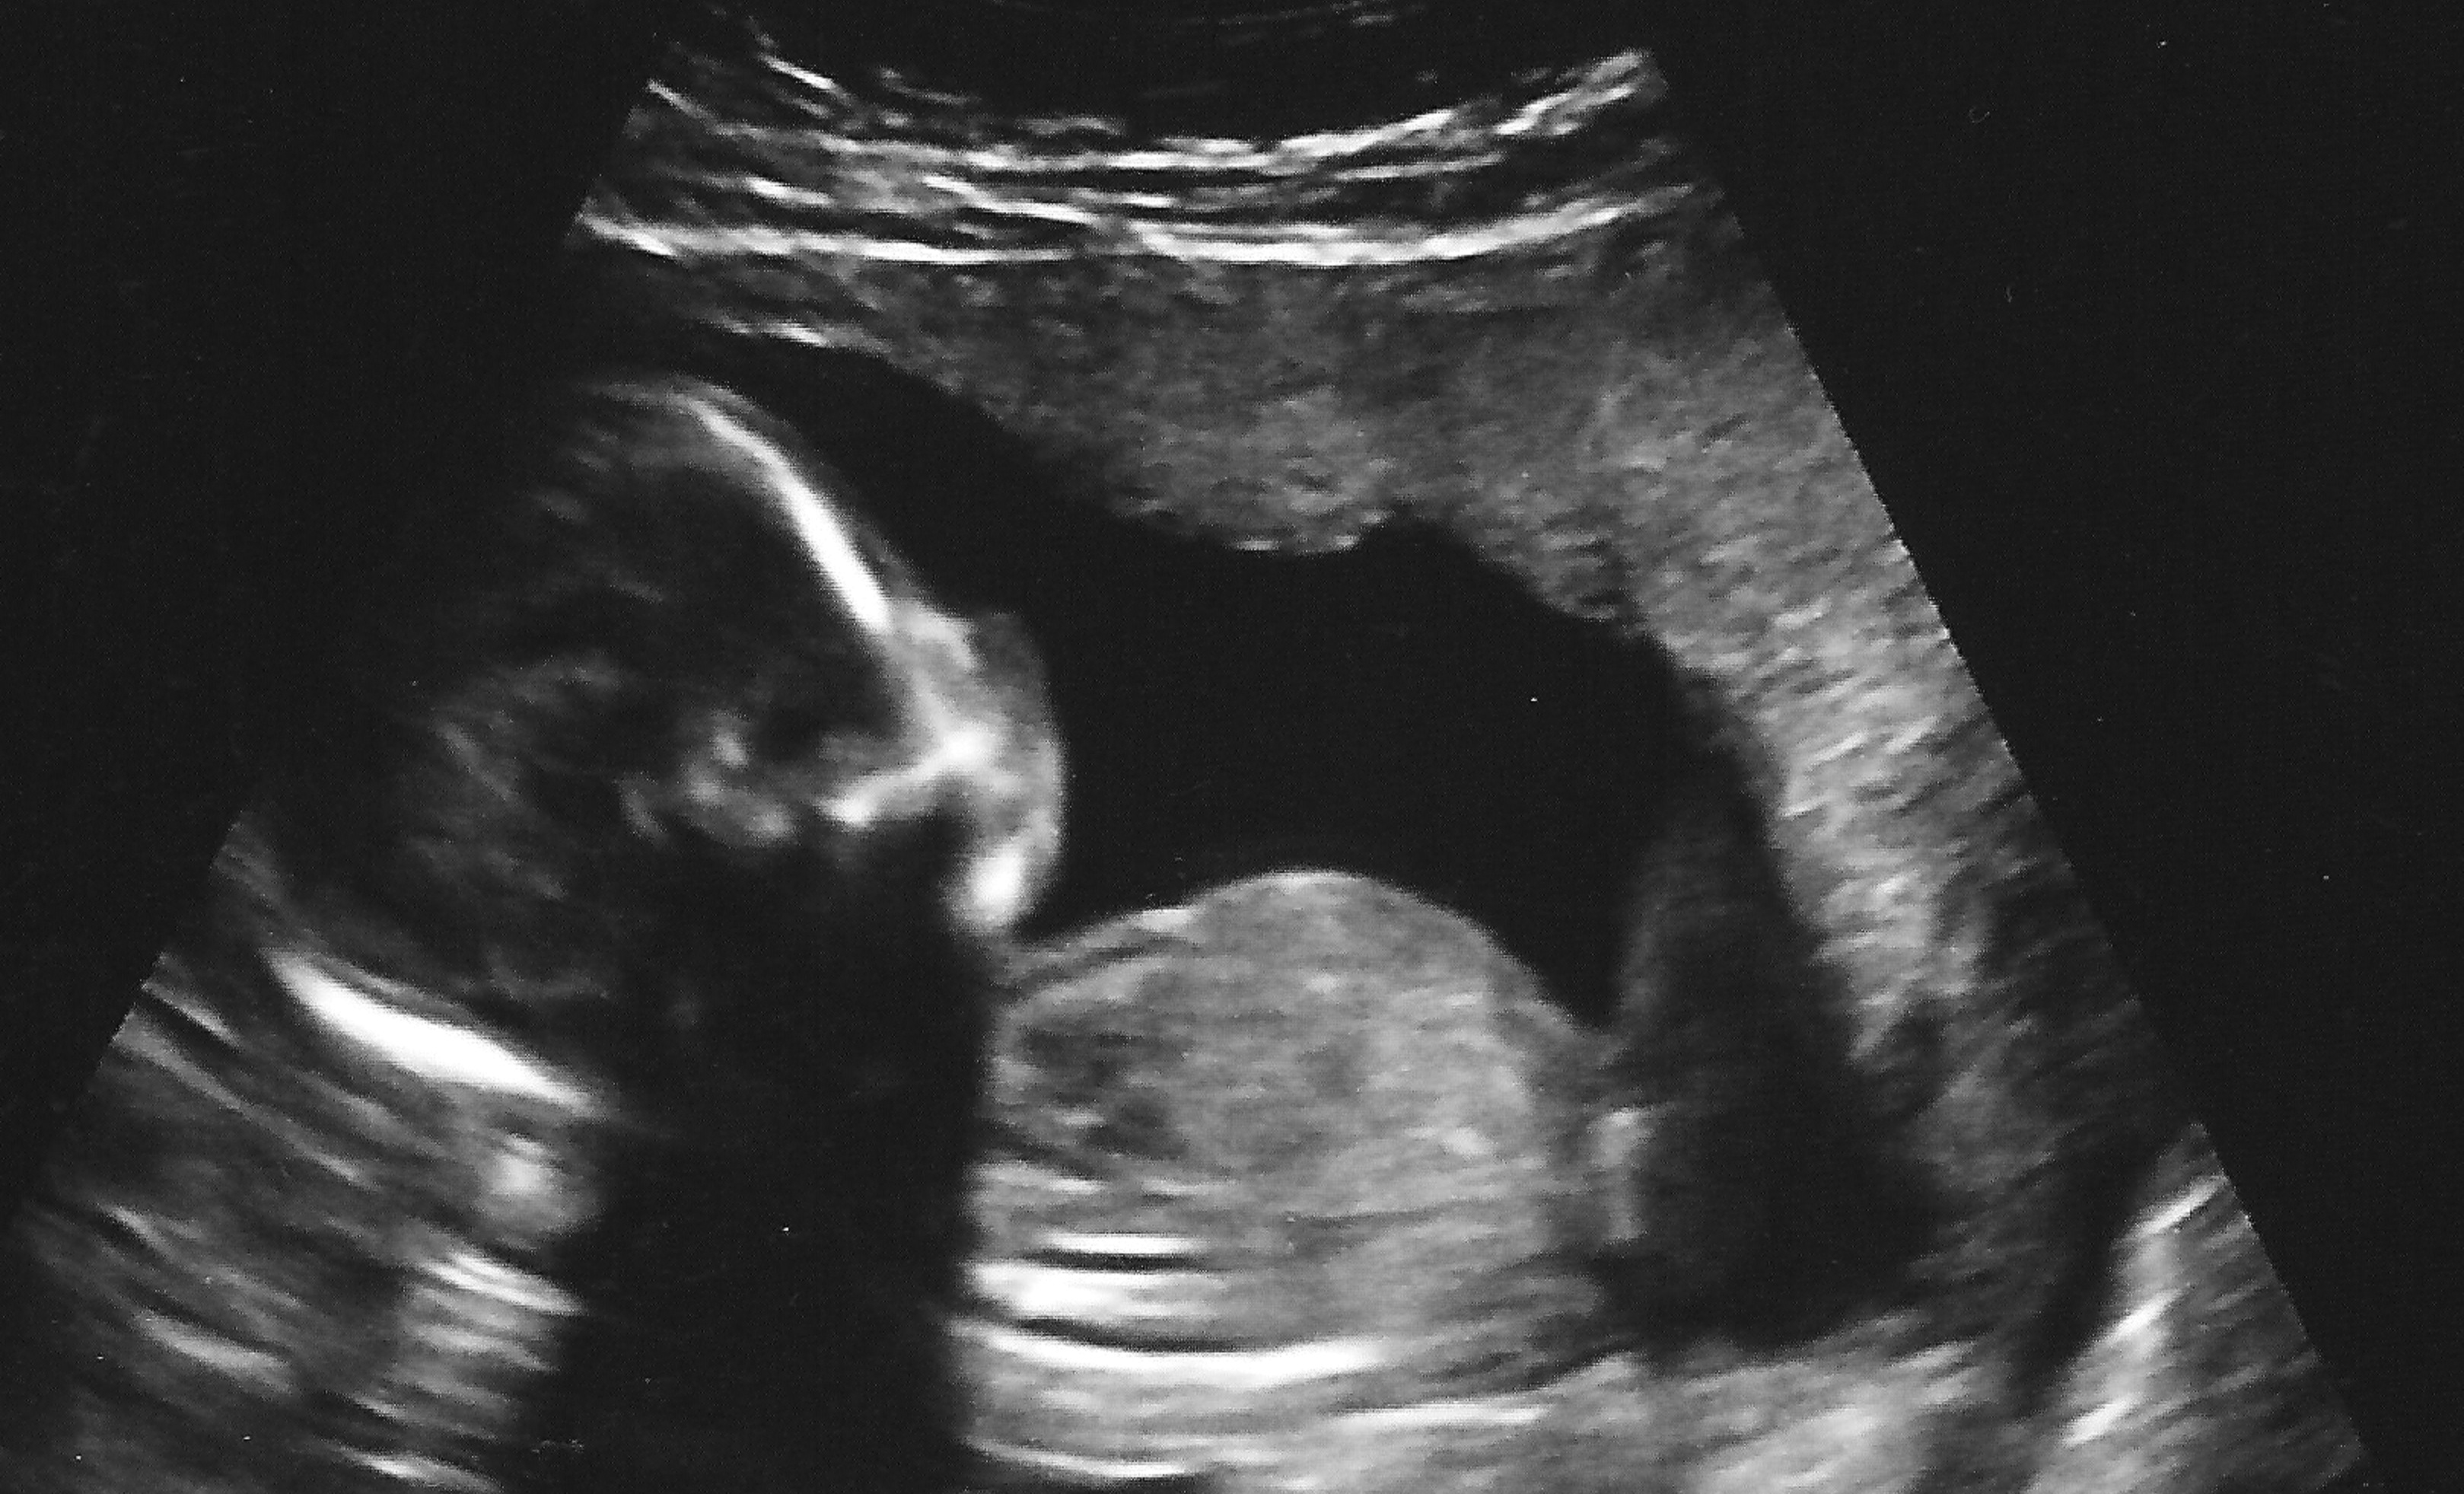 17 недель развитие. Плод 16 недель беременности УЗИ плода. УЗИ 17 недель беременности. 17 Недель беременности фото плода. УЗИ плода 12 акушерских недель беременности.